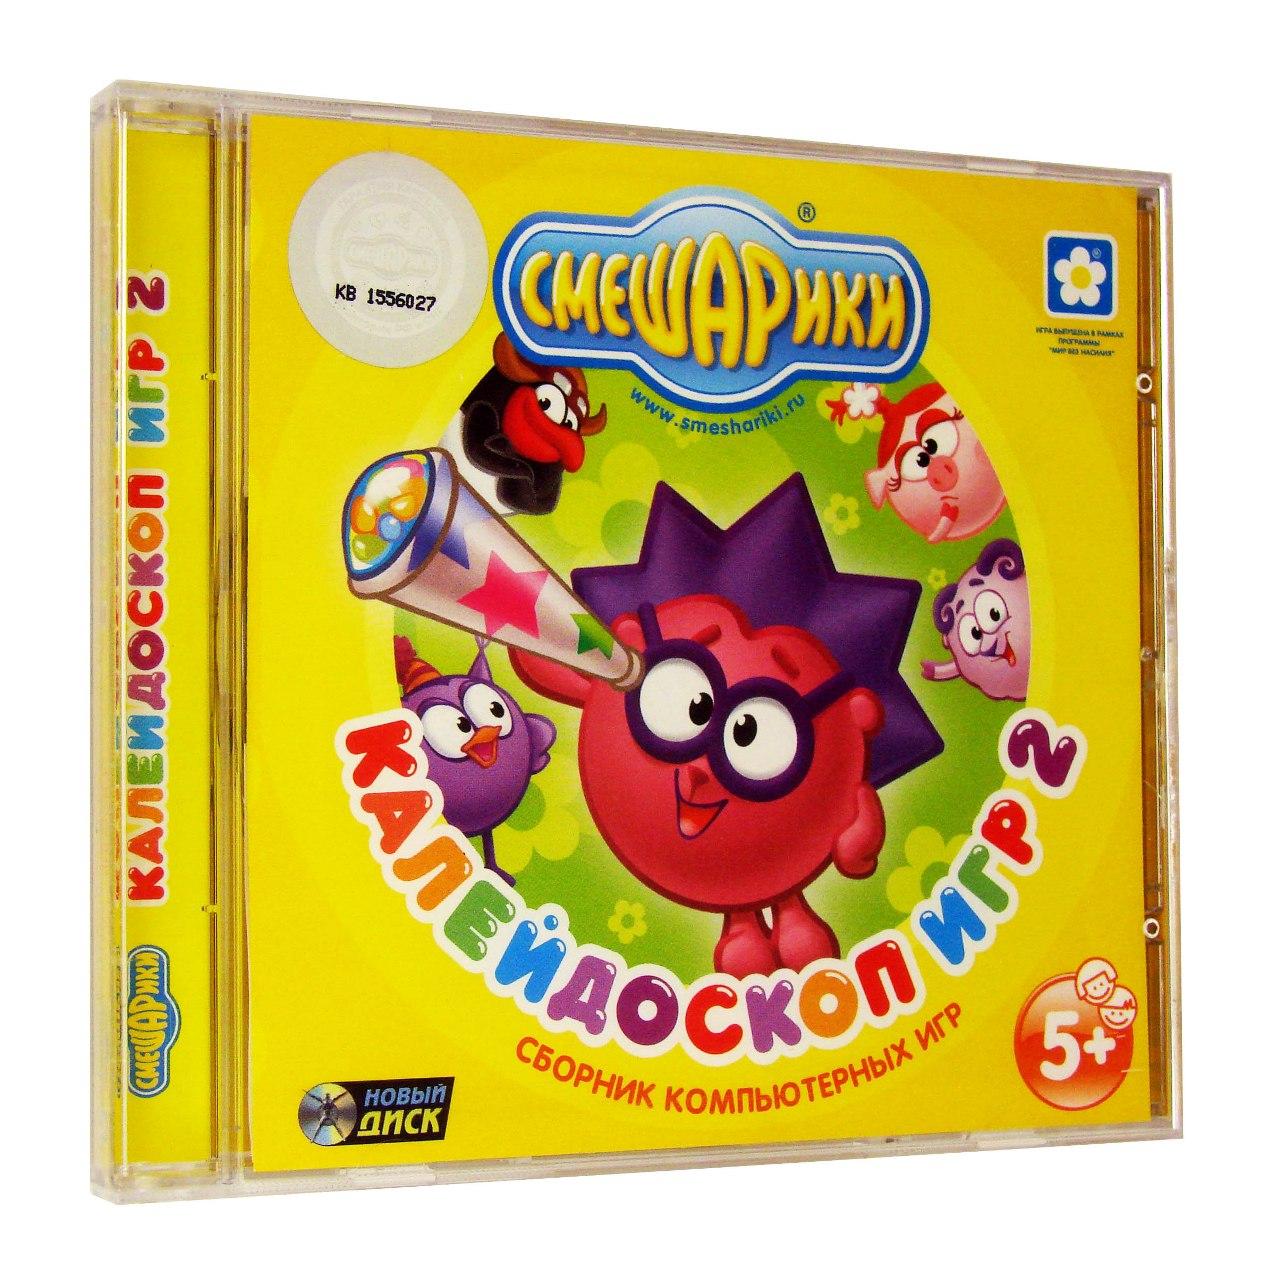 Компьютерный компакт-диск Смешарики. Калейдоскоп игр 2 (ПК), фирма "Новый диск", 1CD